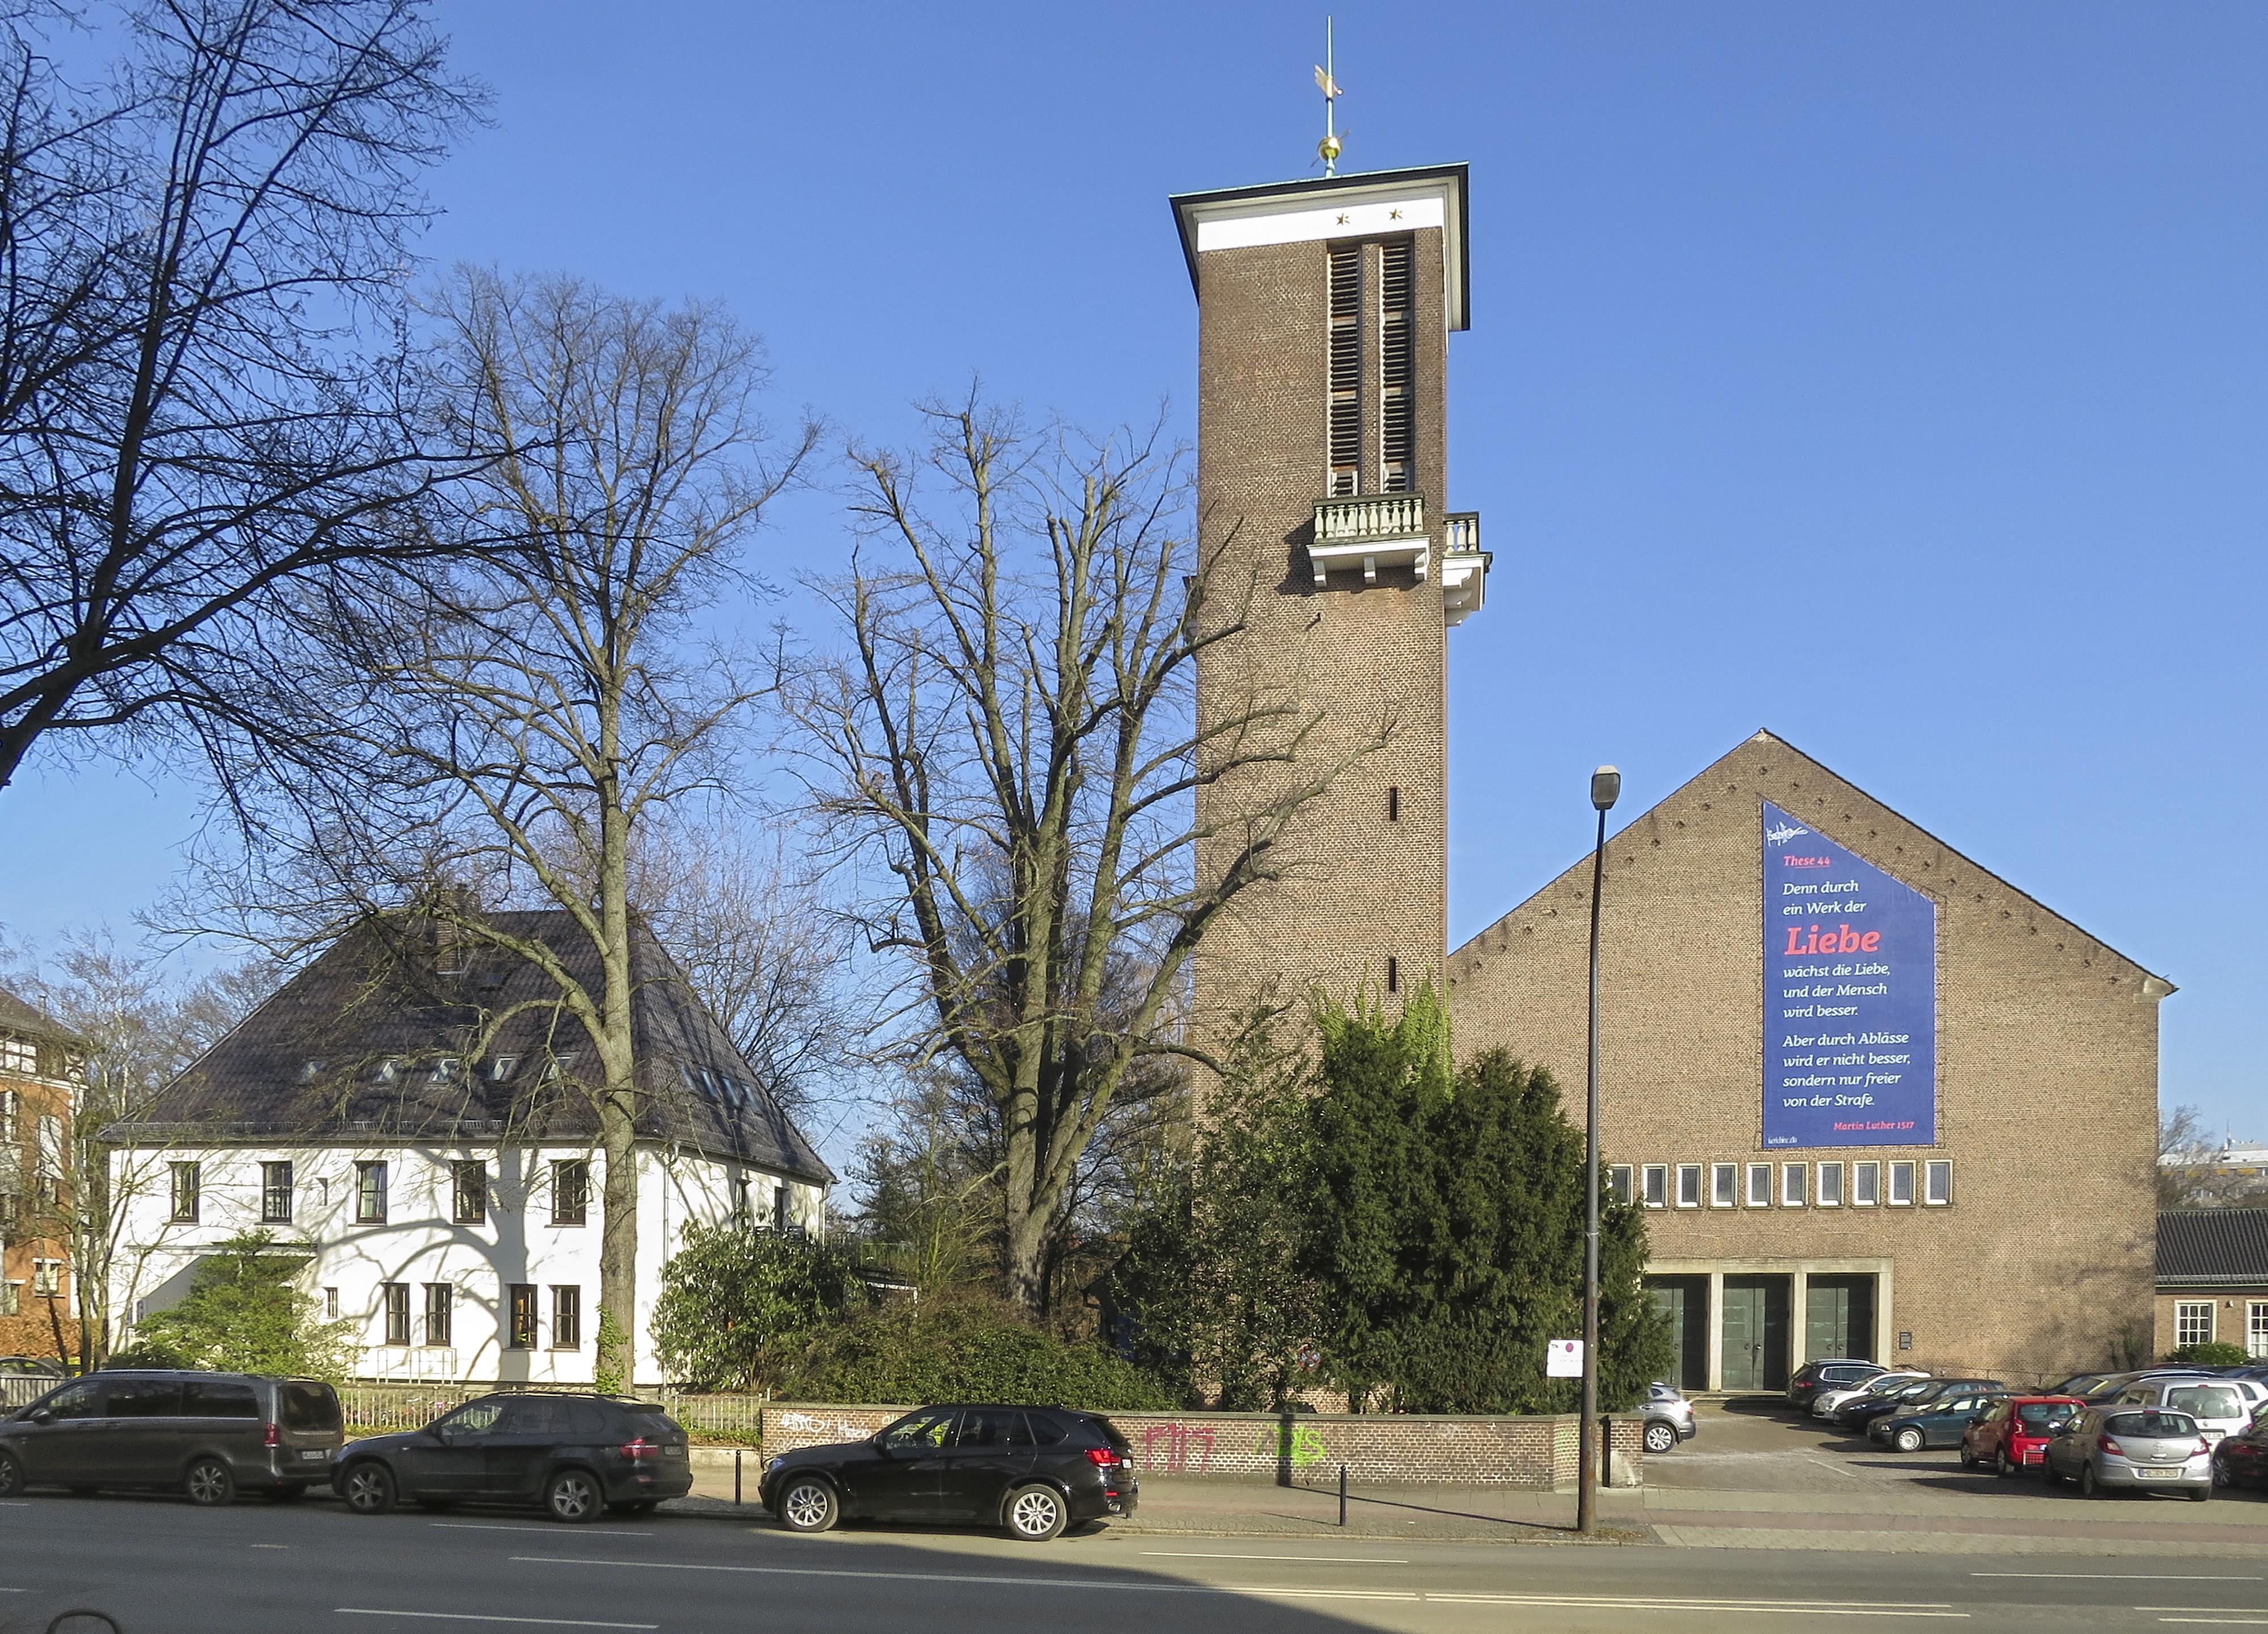 Kundenbild groß 1 St. Ansgarii Kirche - St. Ansgarii Gemeinde